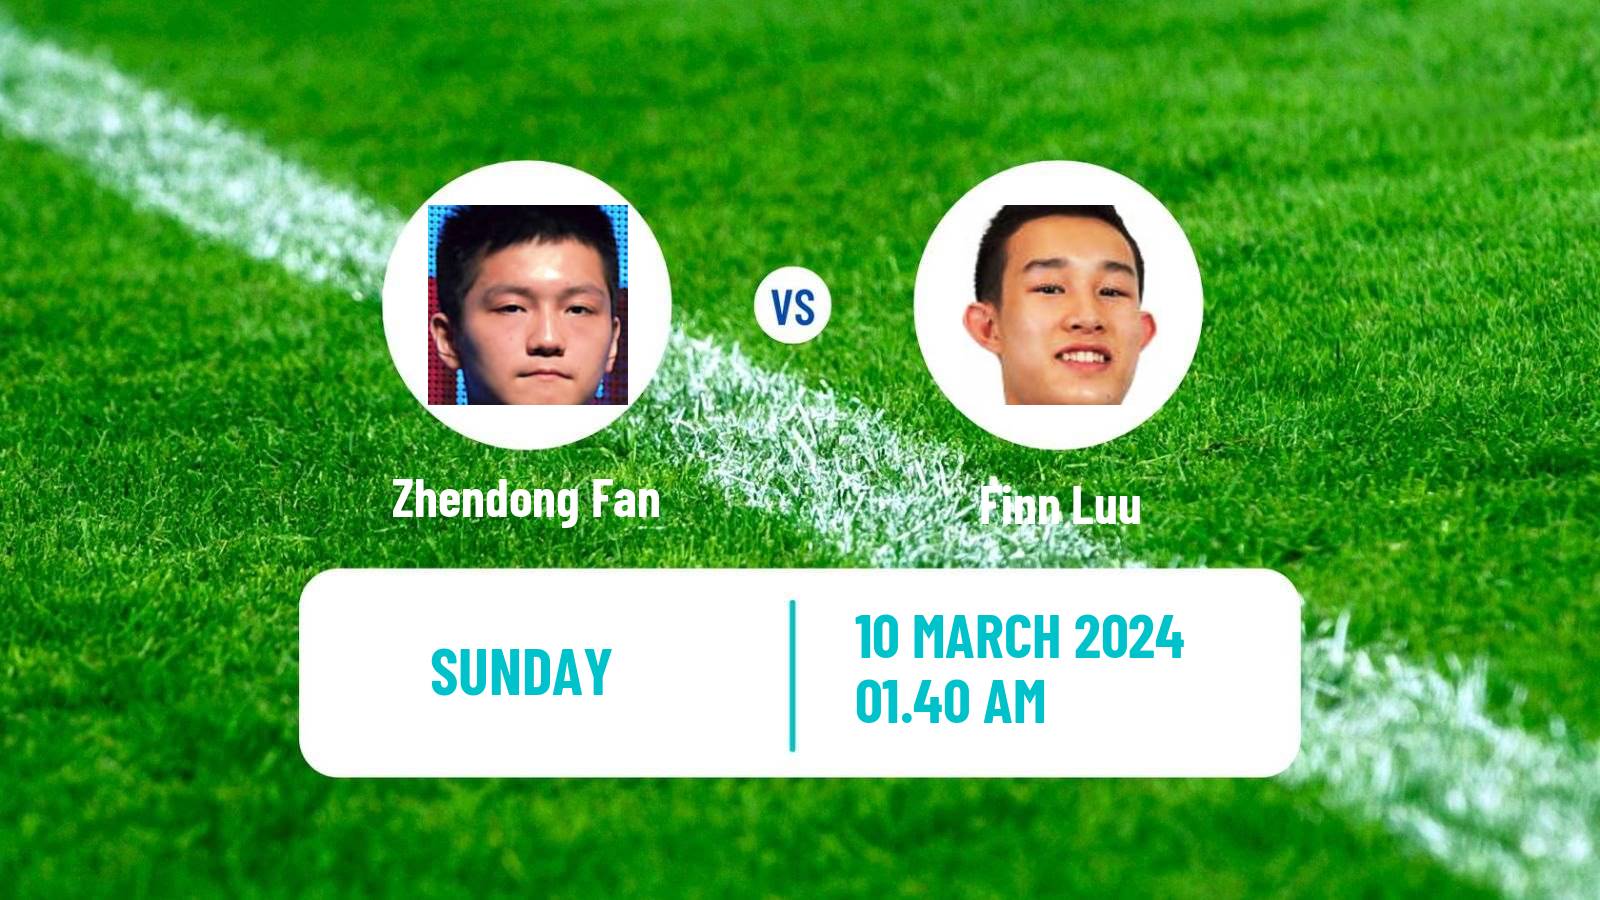 Table tennis Singapore Smash Men Zhendong Fan - Finn Luu